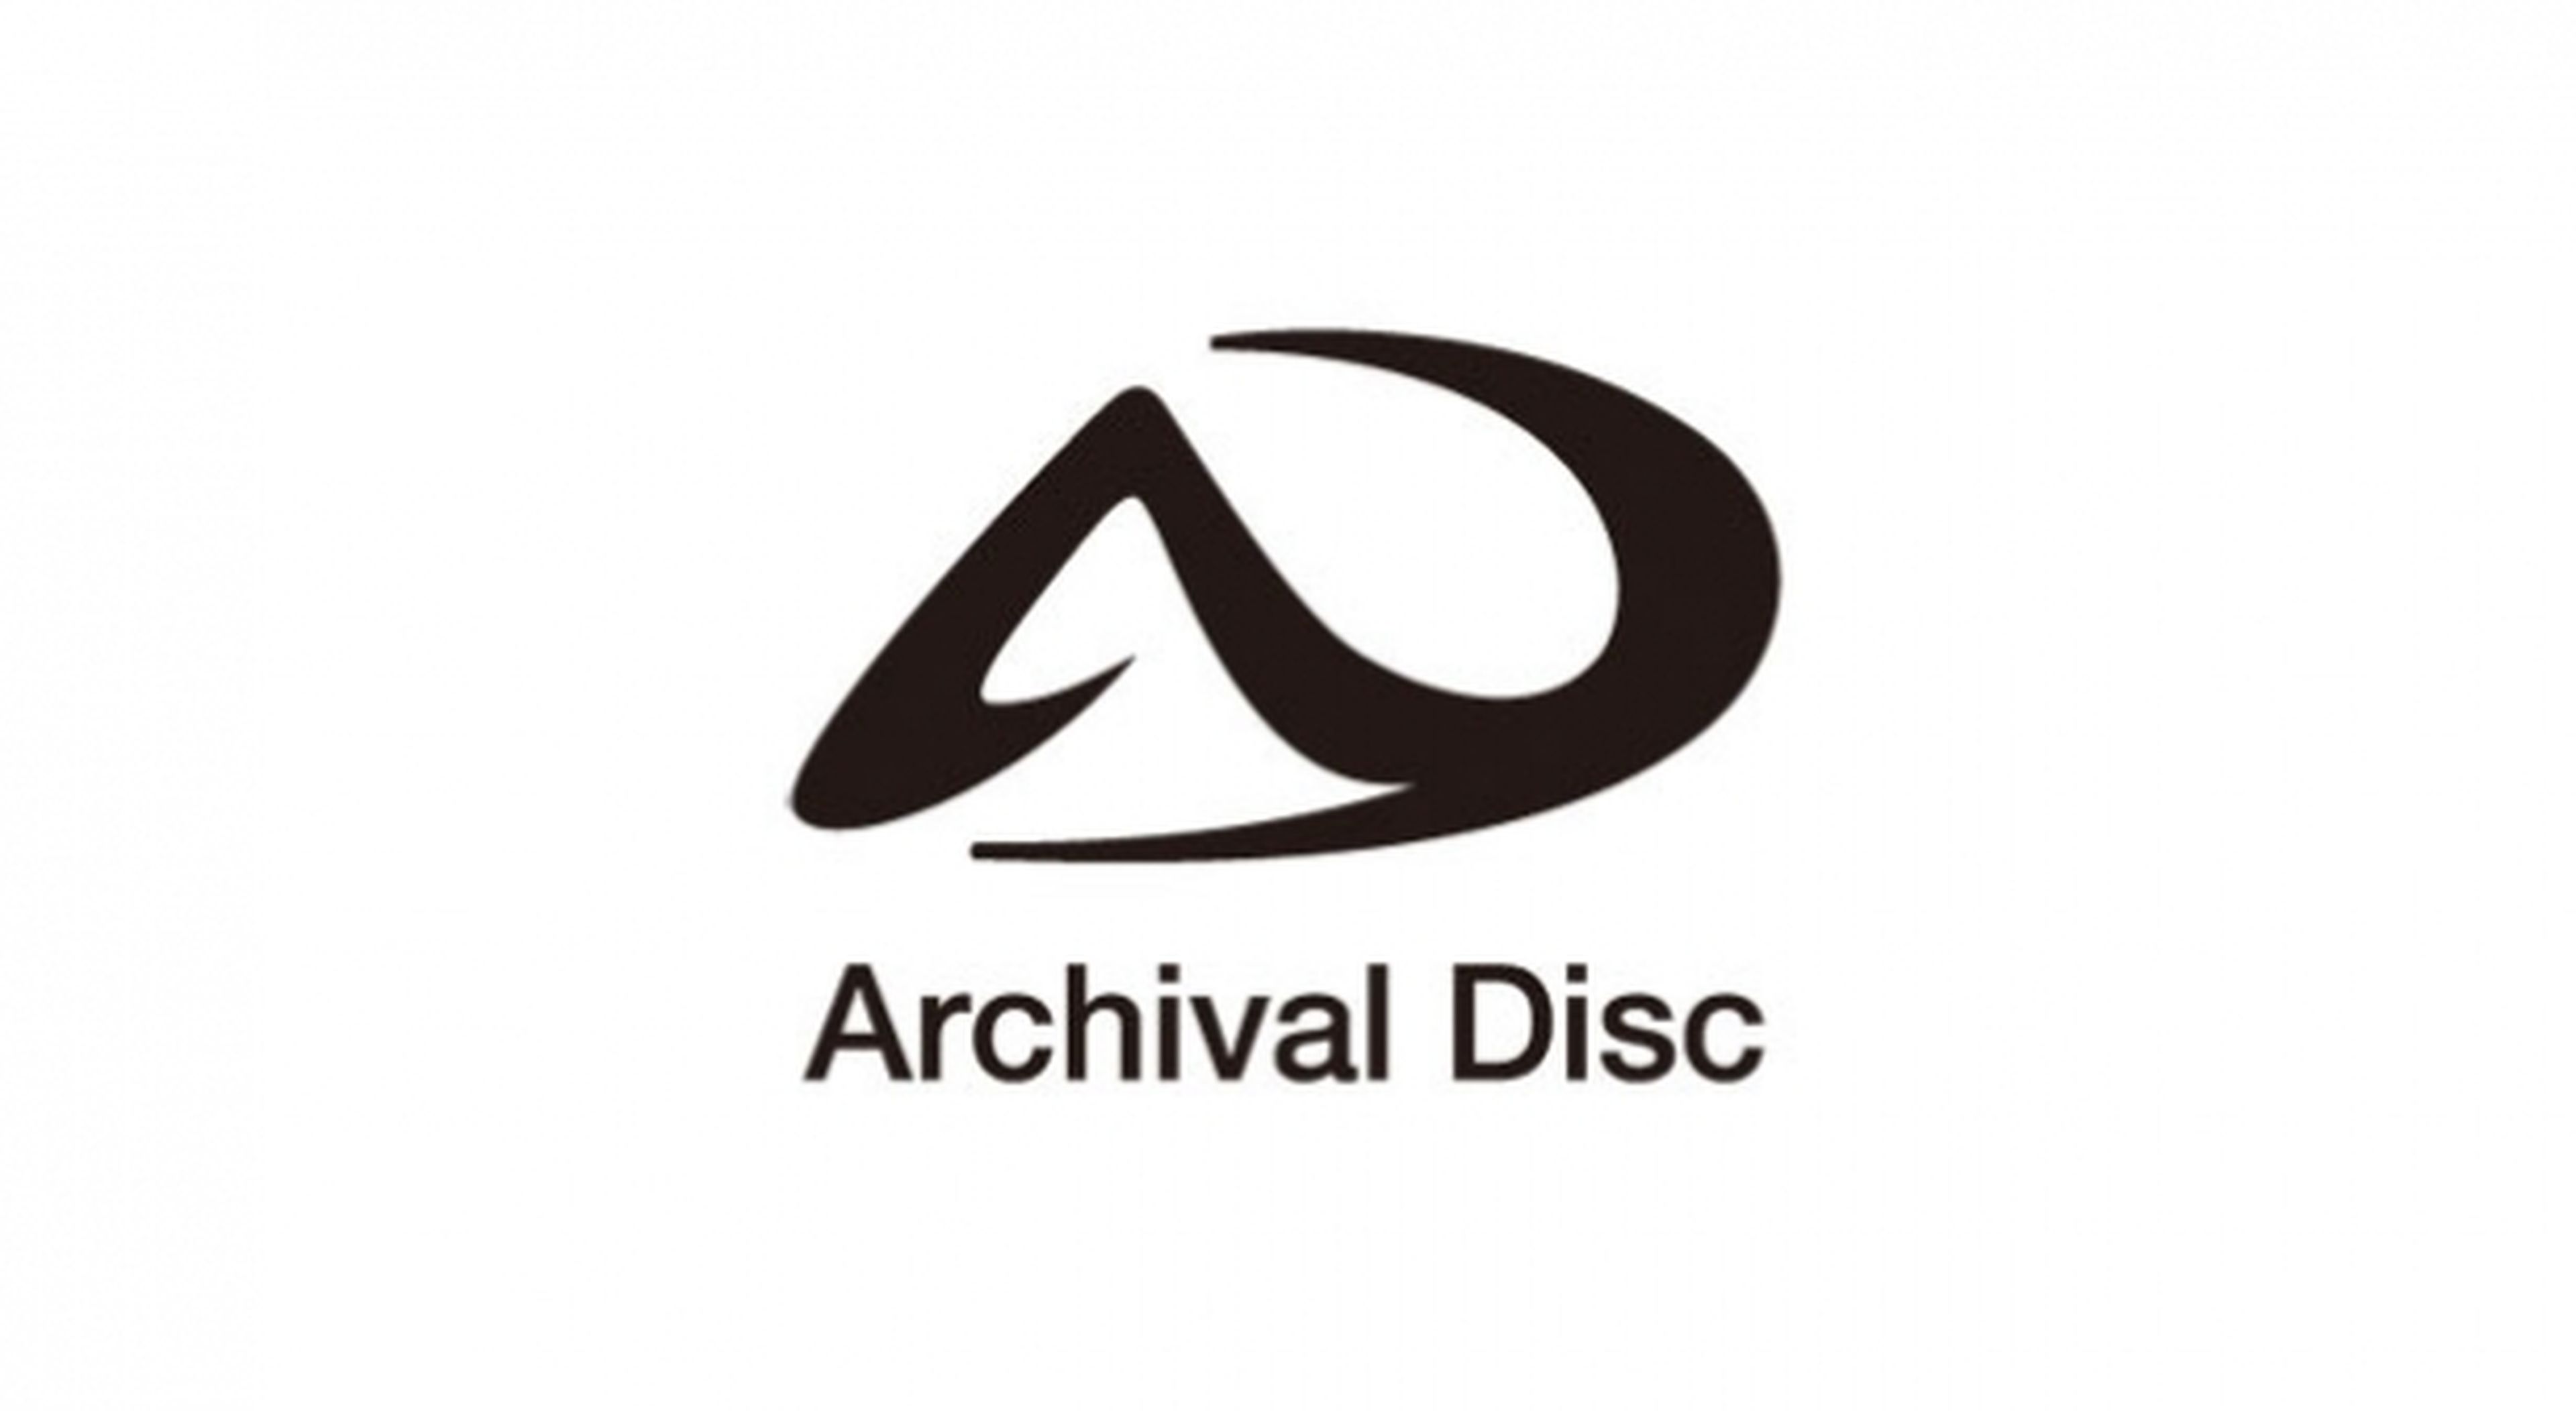 Archival Disc, el sucesor del Blu-ray, presentado por Sony